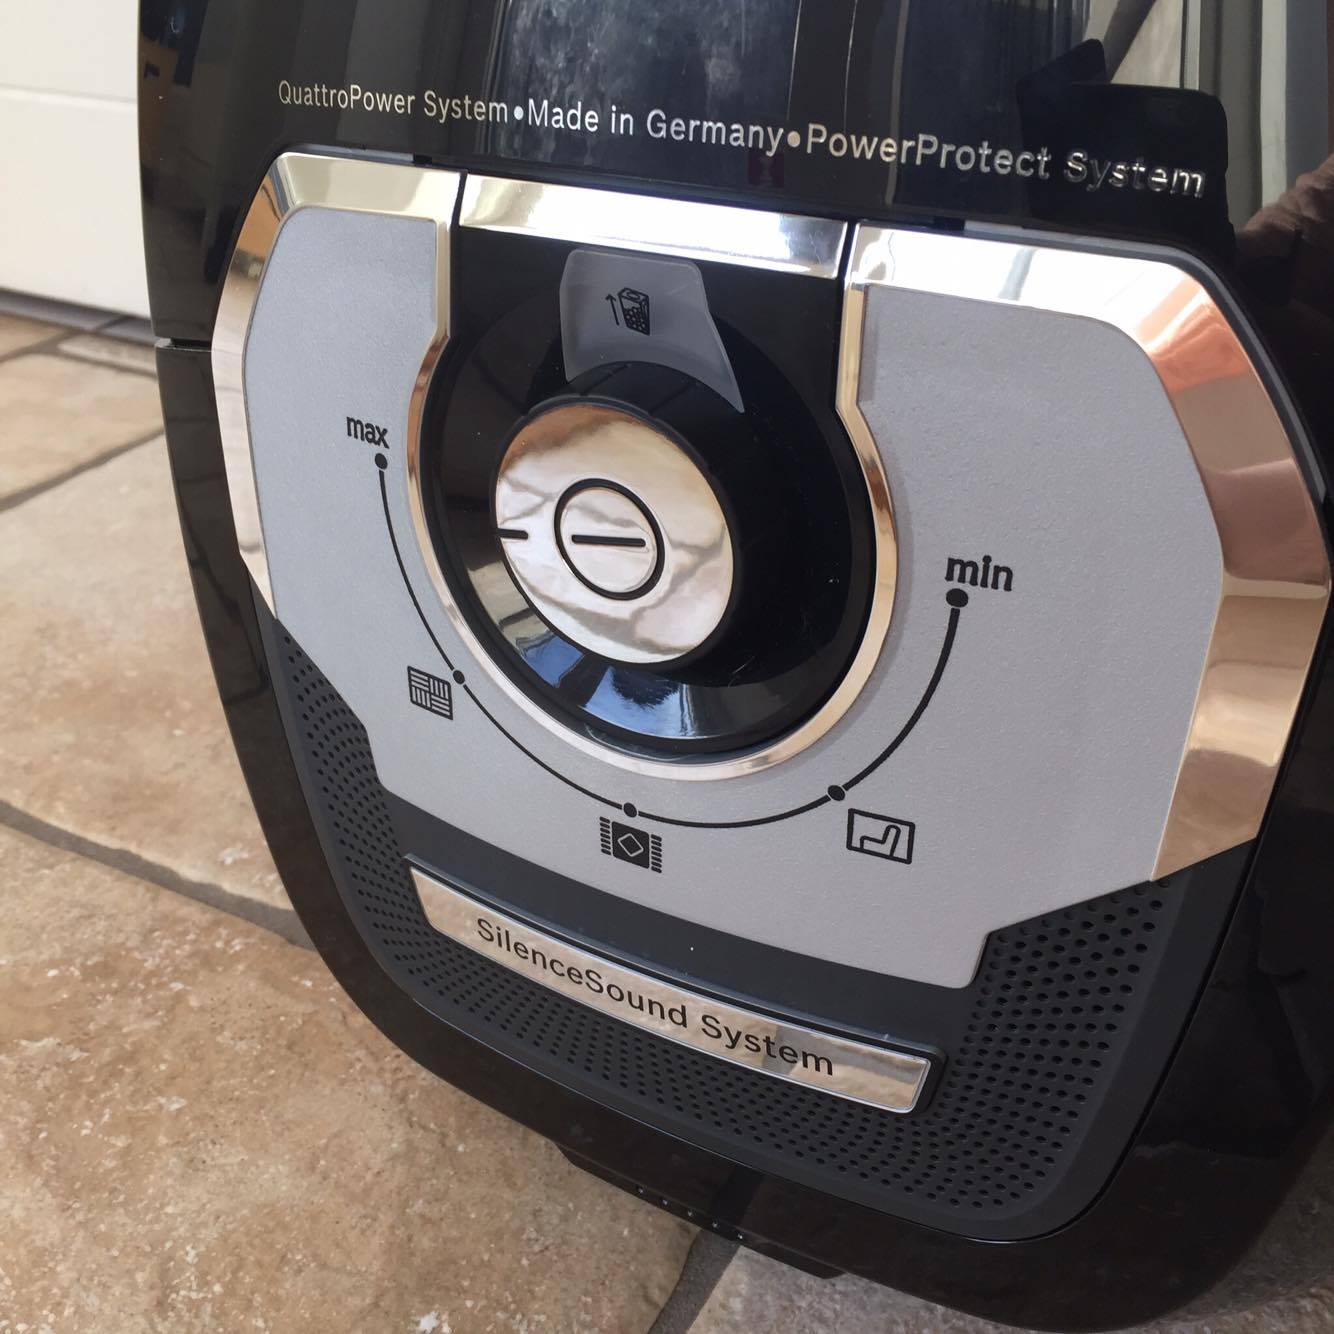 Verdens mest støjsvage støvsuger ”In'genius ProSilence 57” fra Bosch |  Bolig | Testfamilien